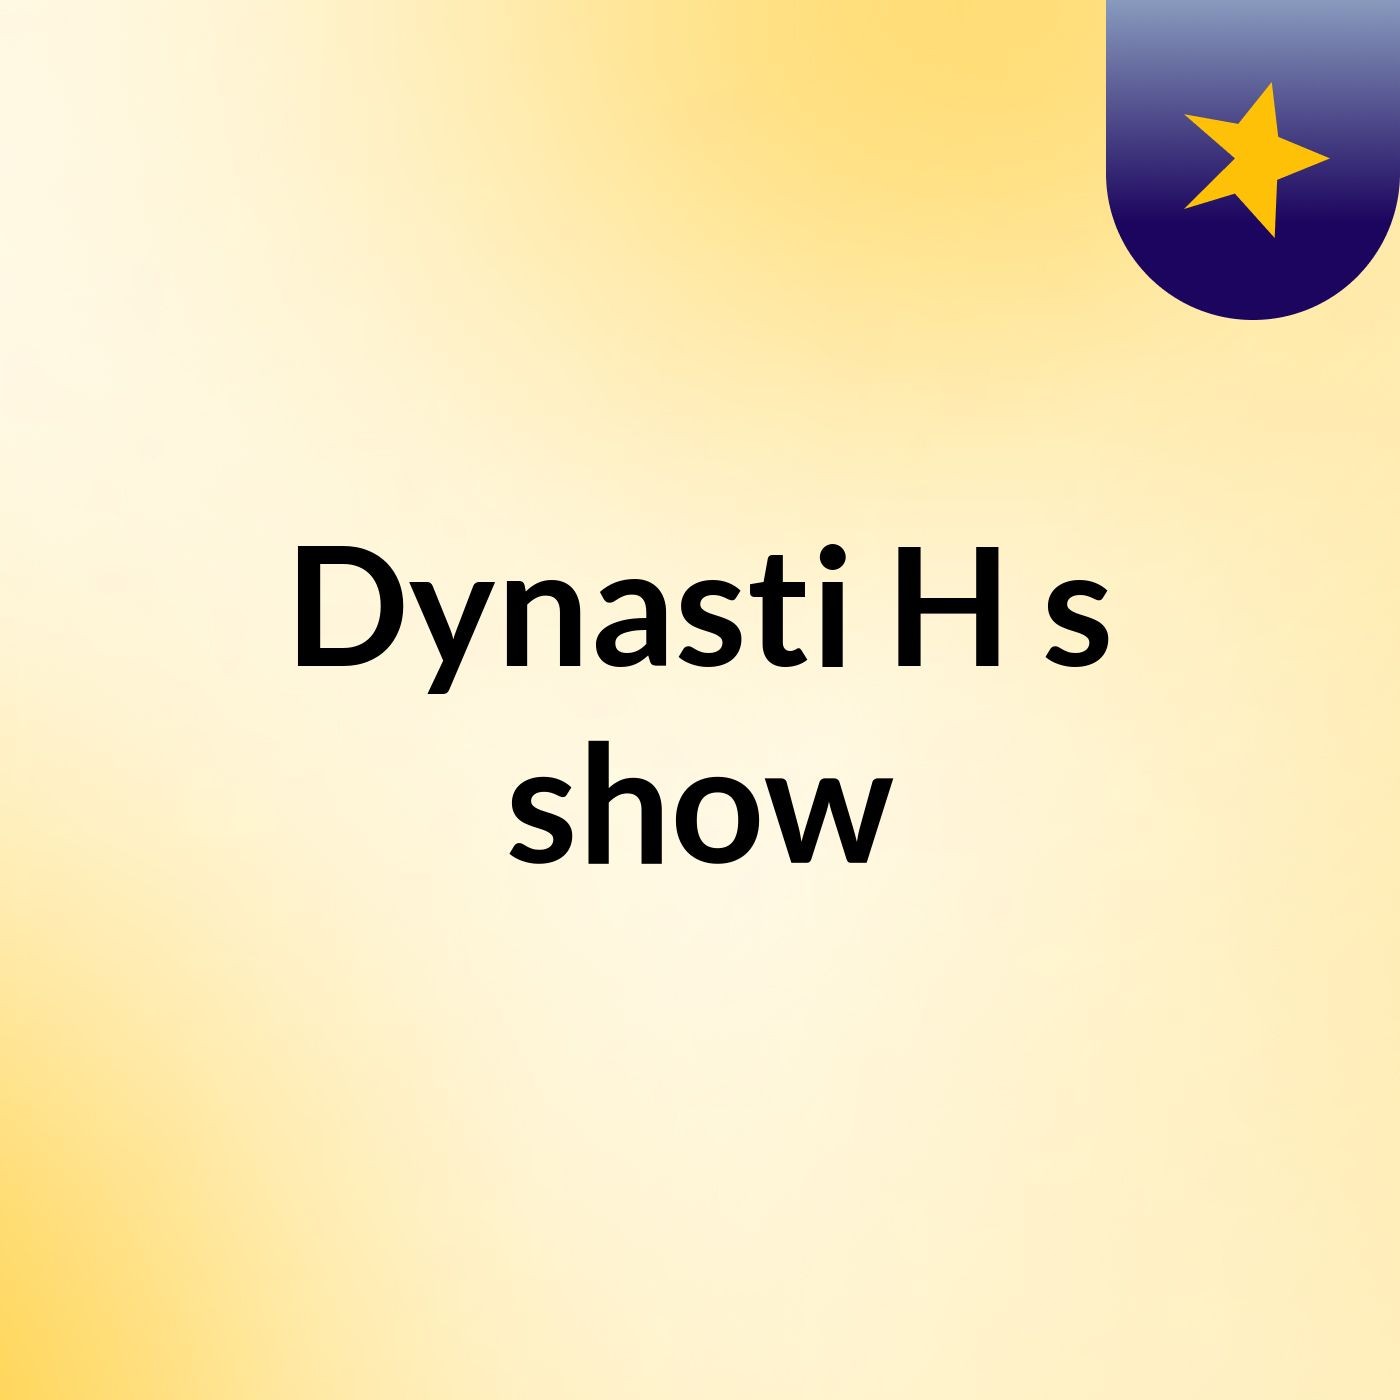 Dynasti H's show